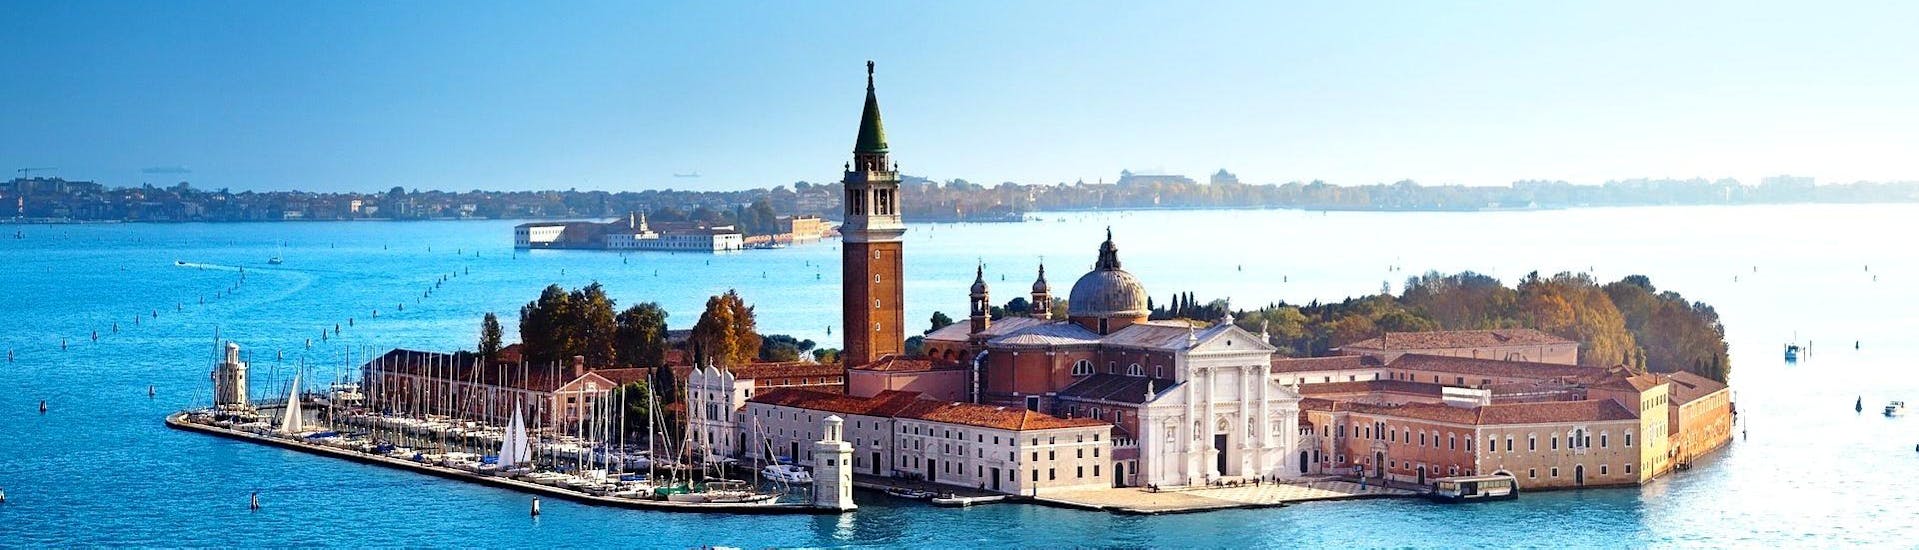 Uitzicht op het eiland San Giorgio Maggiore, dat te zien is tijdens een wandeltocht en een gedeelde gondelrit rond Venetië met Venice Boat Experience.